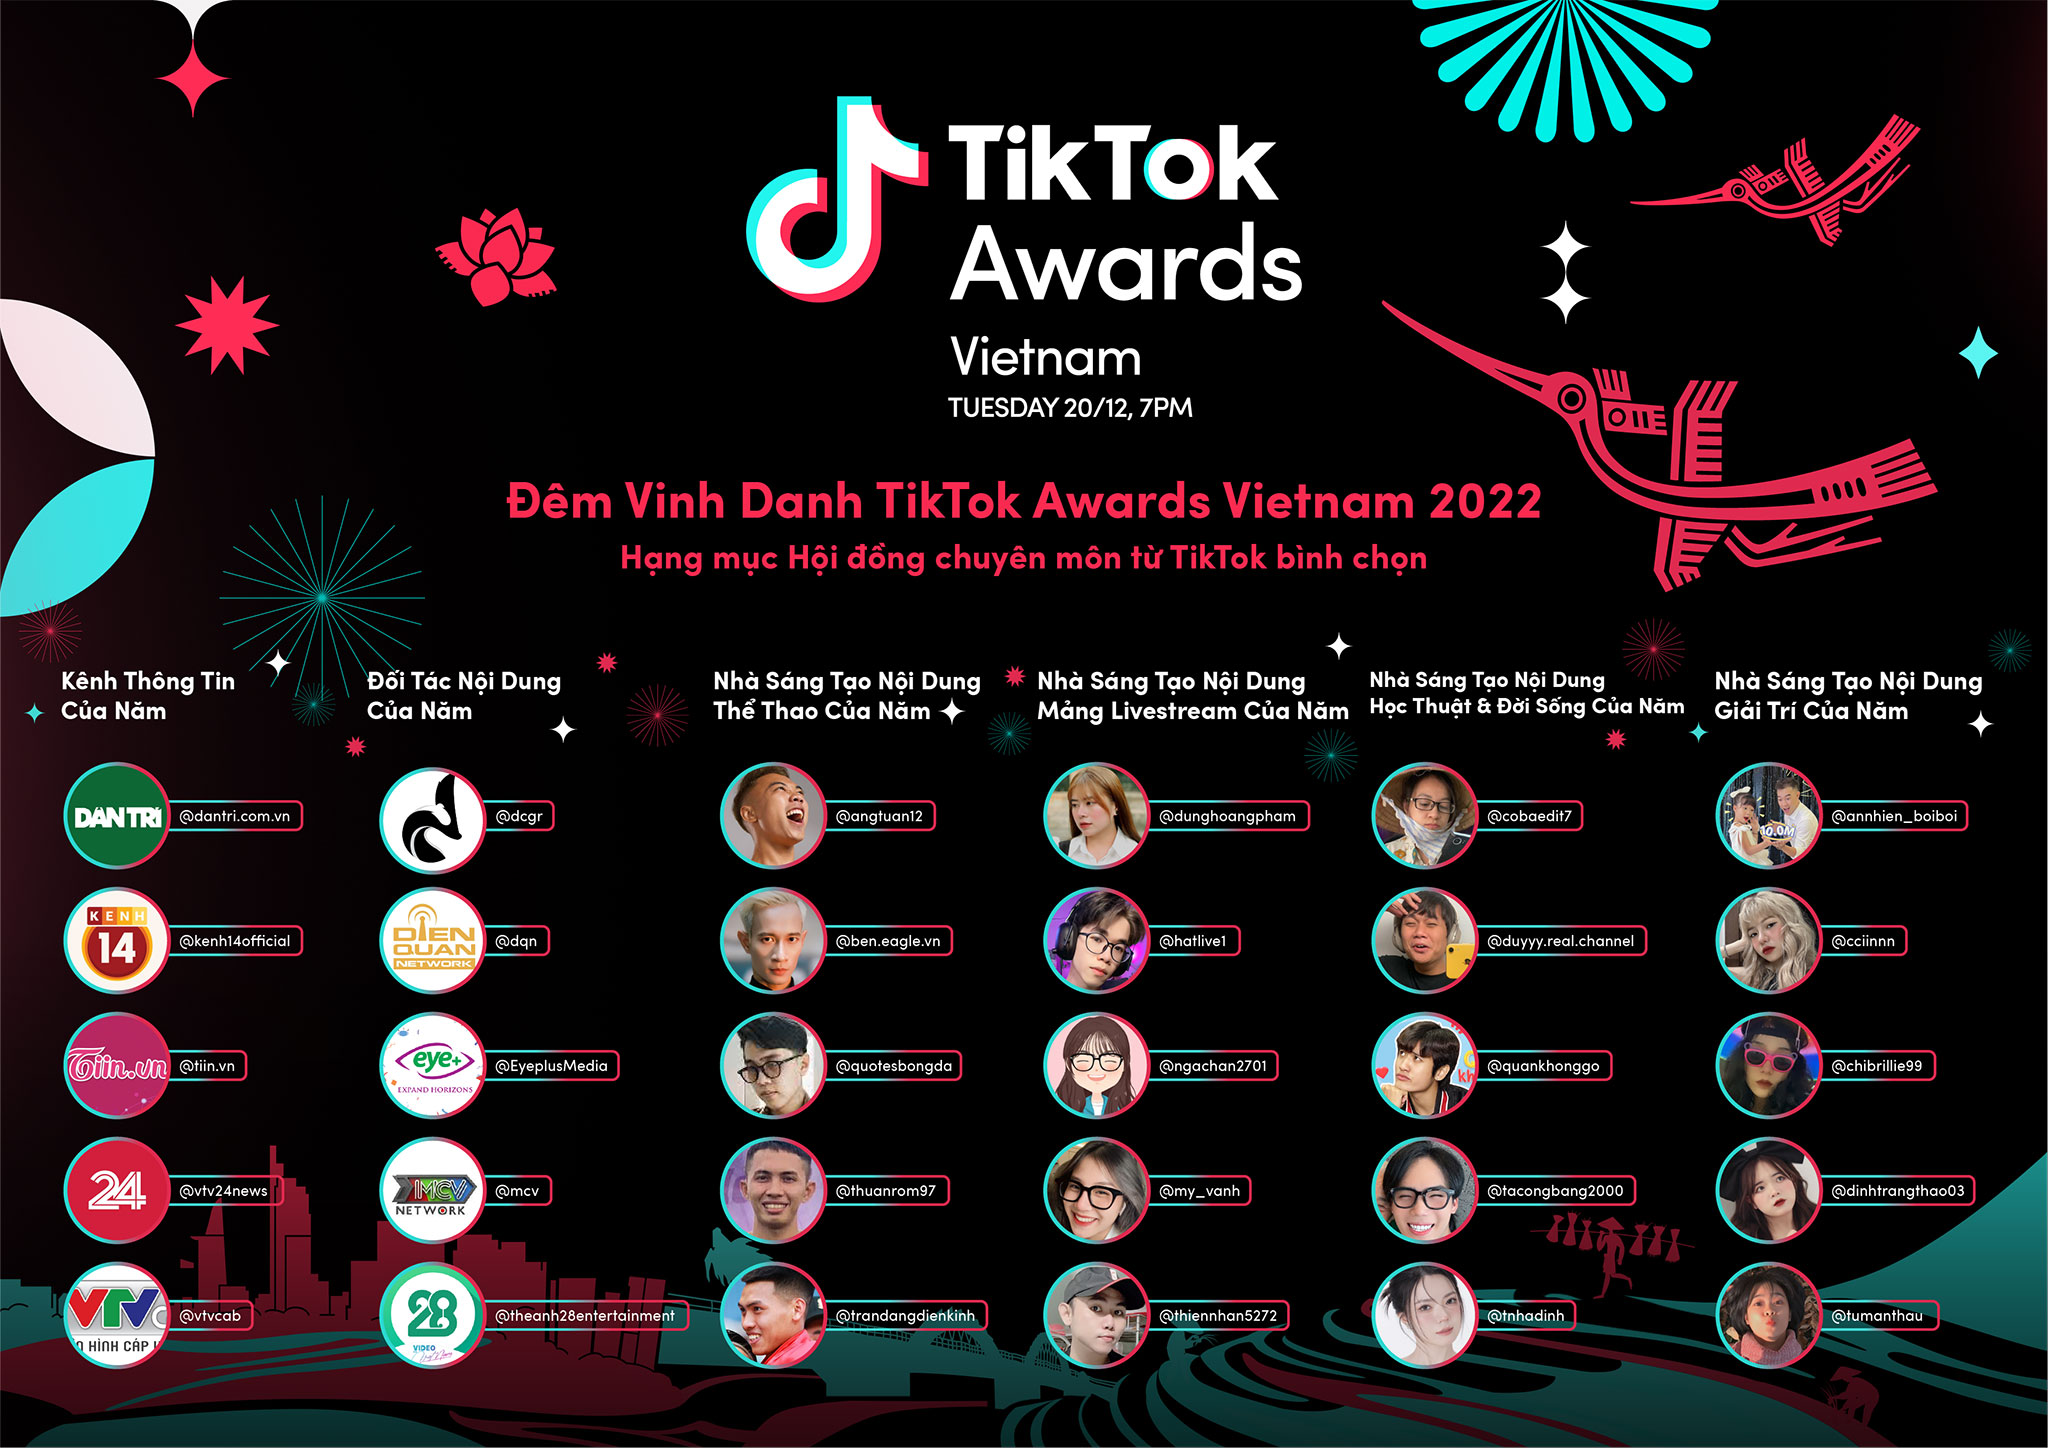 TikTok Awards Việt Nam 2022 chính thức mở cổng bình chọn: Tôn vinh những dấu ấn cá nhân và tinh thần sáng tạo vì cộng đồng